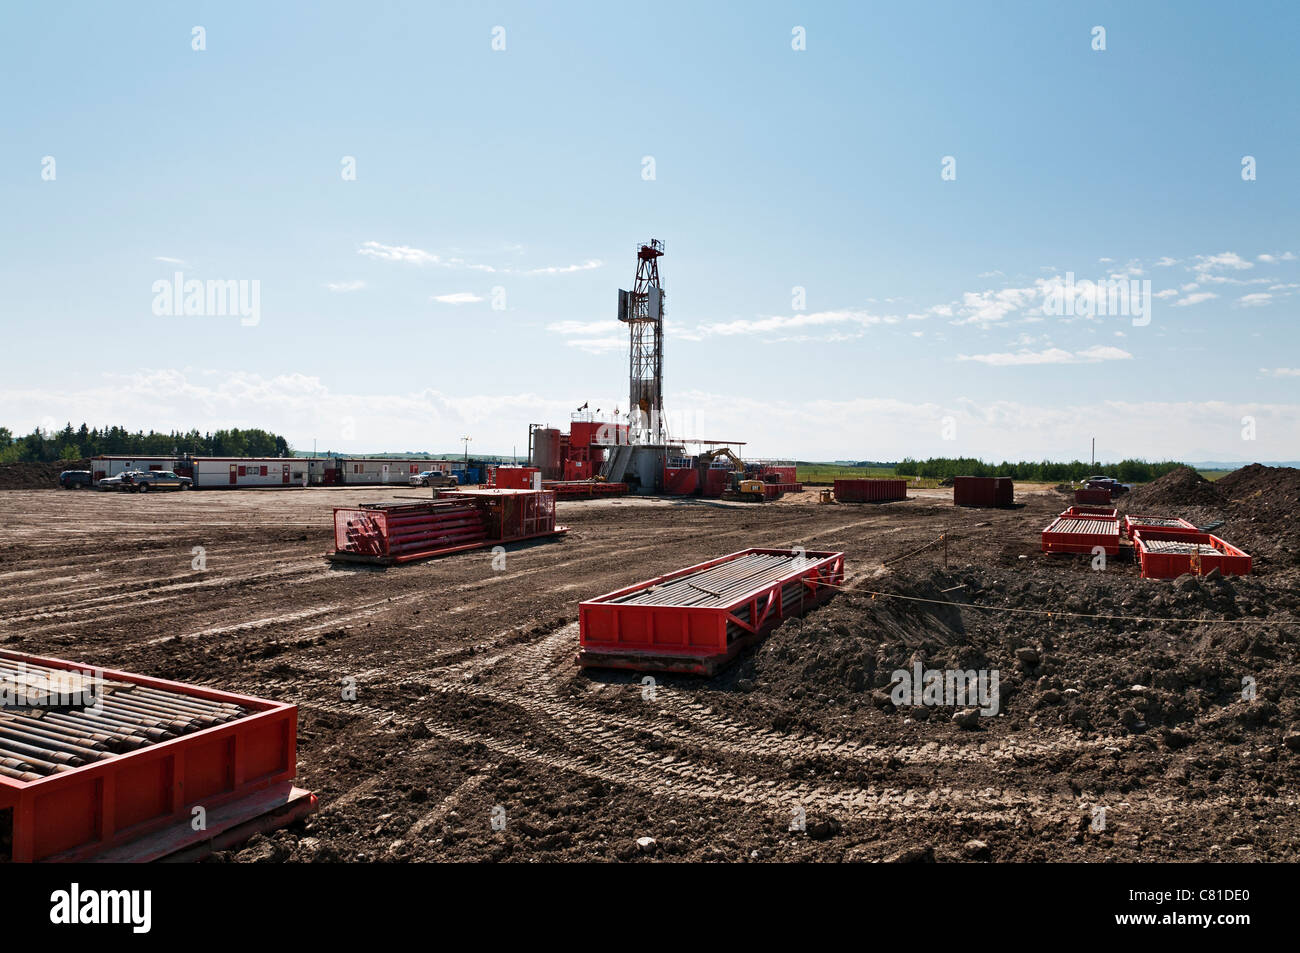 Crude oil exploration, Alberta, Canada Stock Photo